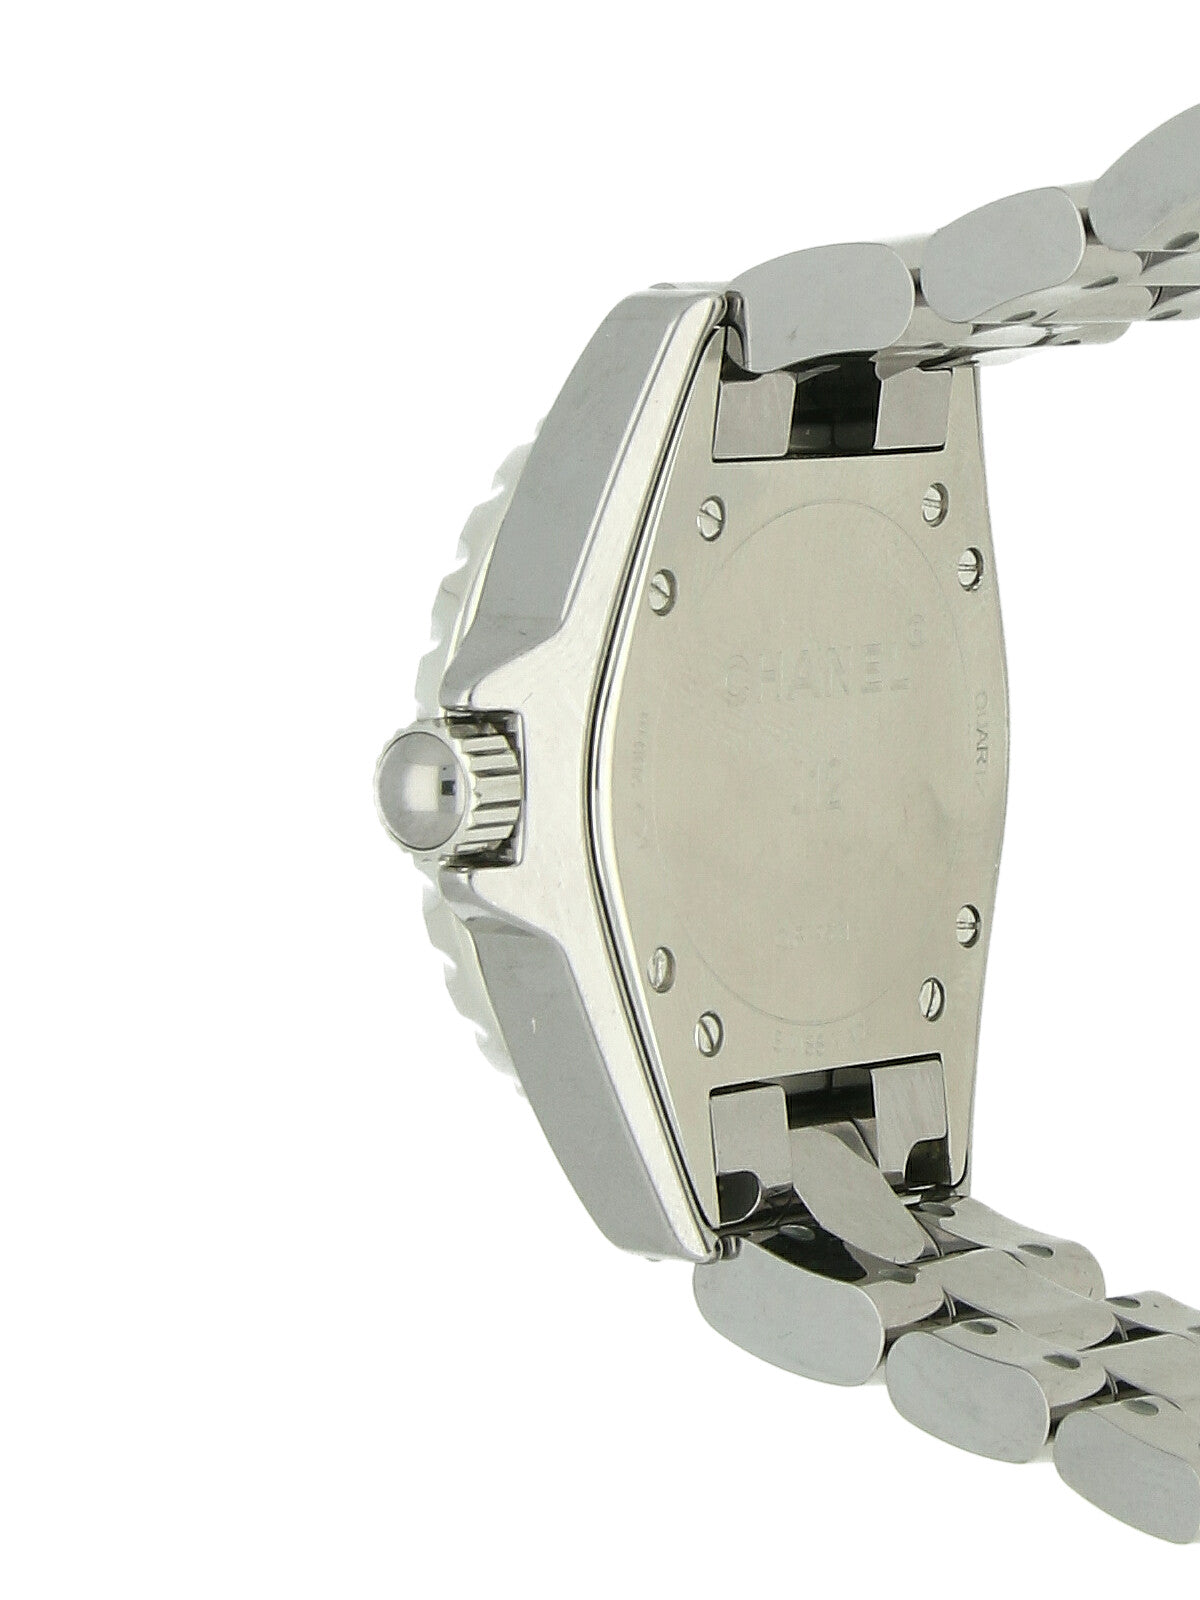 Pre Owned Chanel J12 Steel Quartz Watch on Bracelet